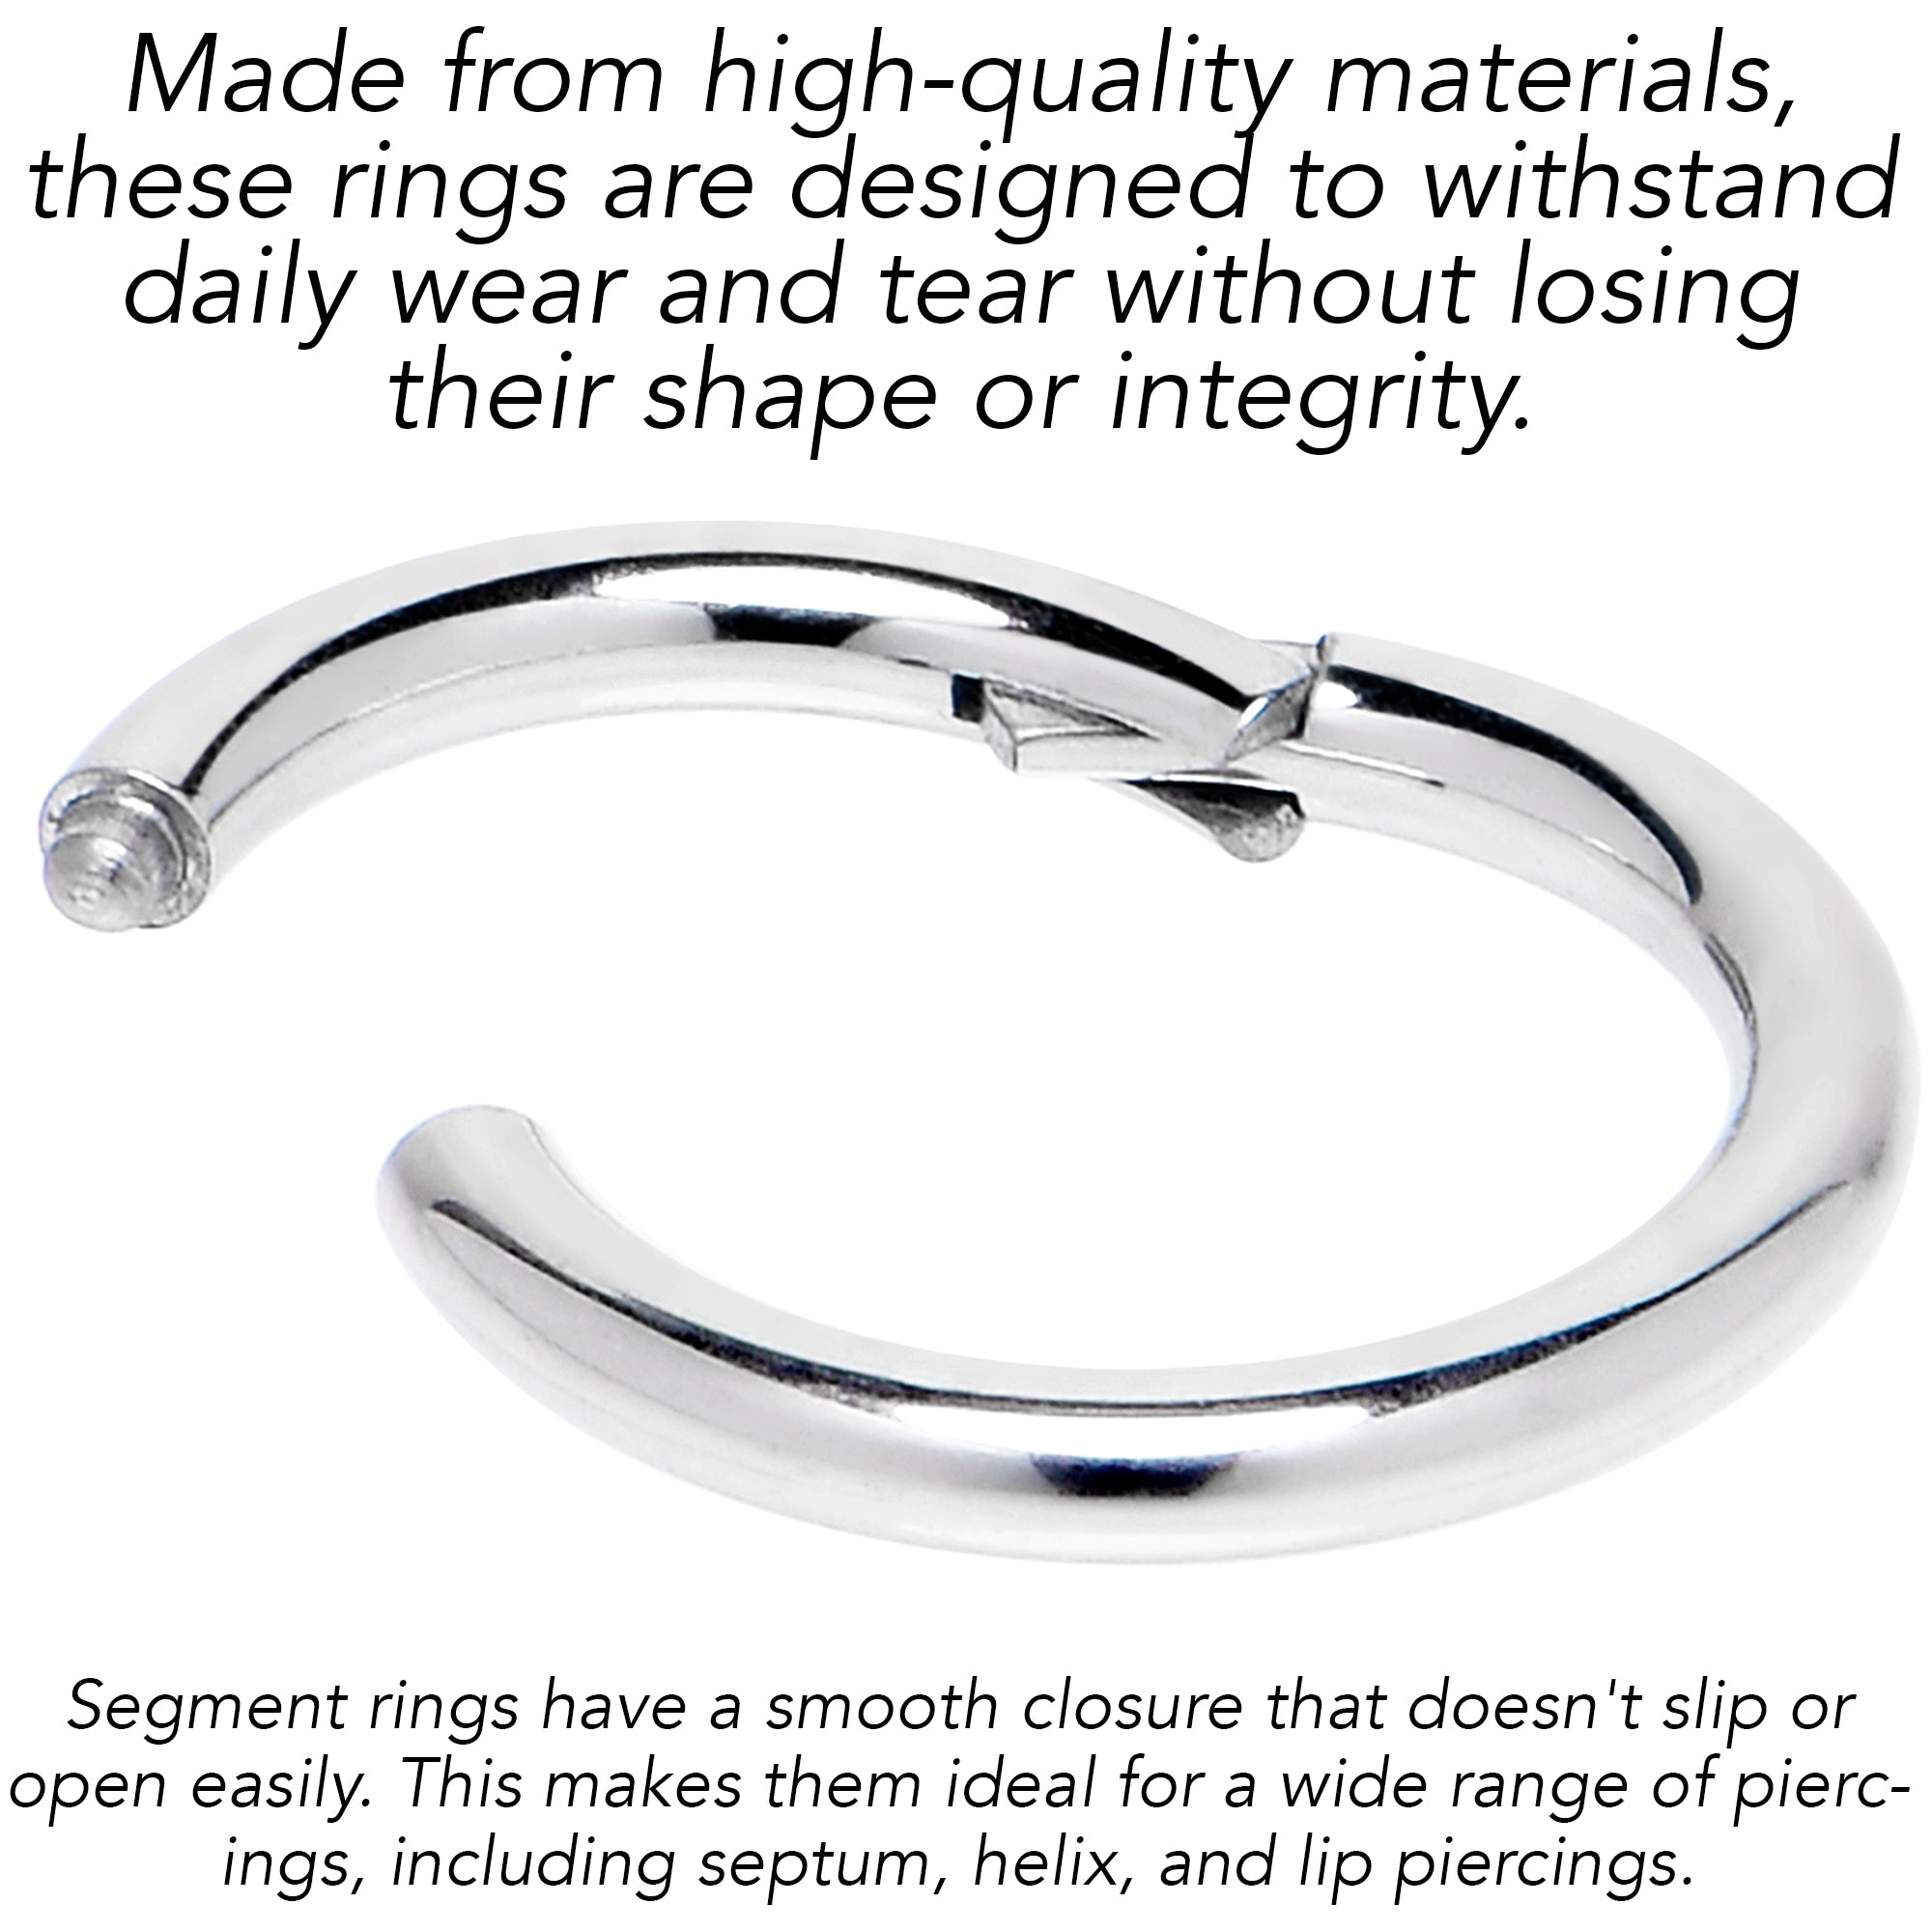 6 Gauge 9/16 316L Surgical Steel Precision Hinged Segment Hoop